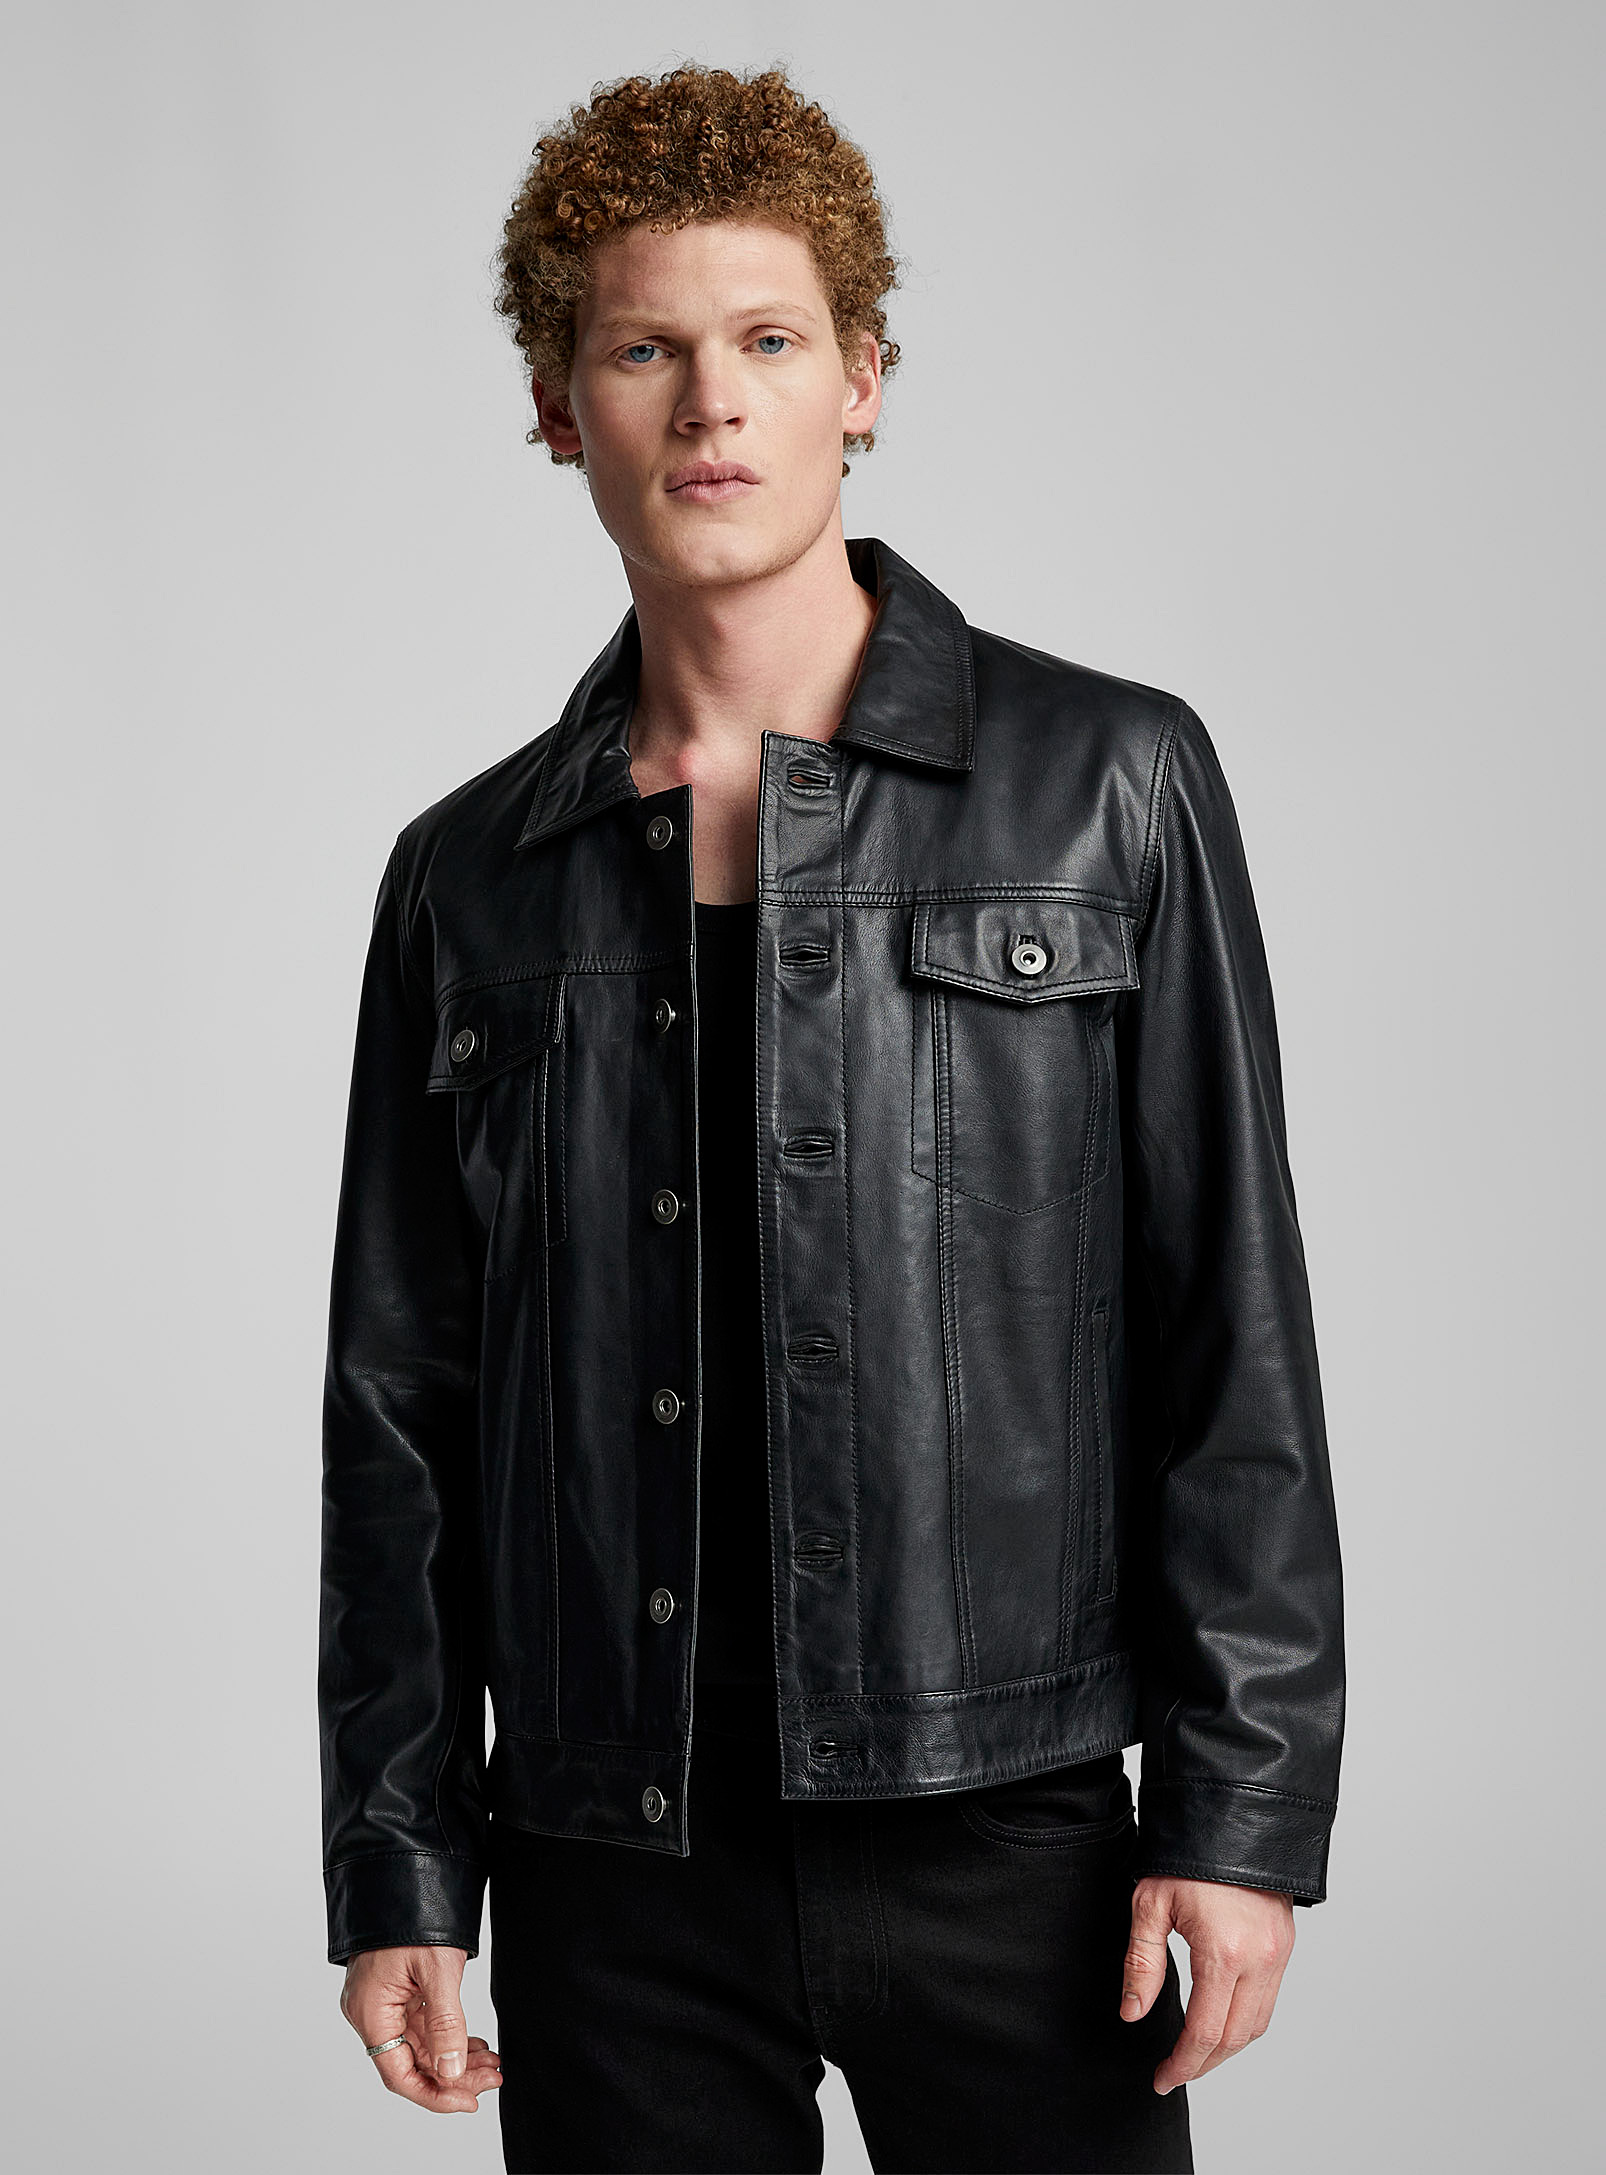 Sly & Co - Men's Leather Trucker jacket